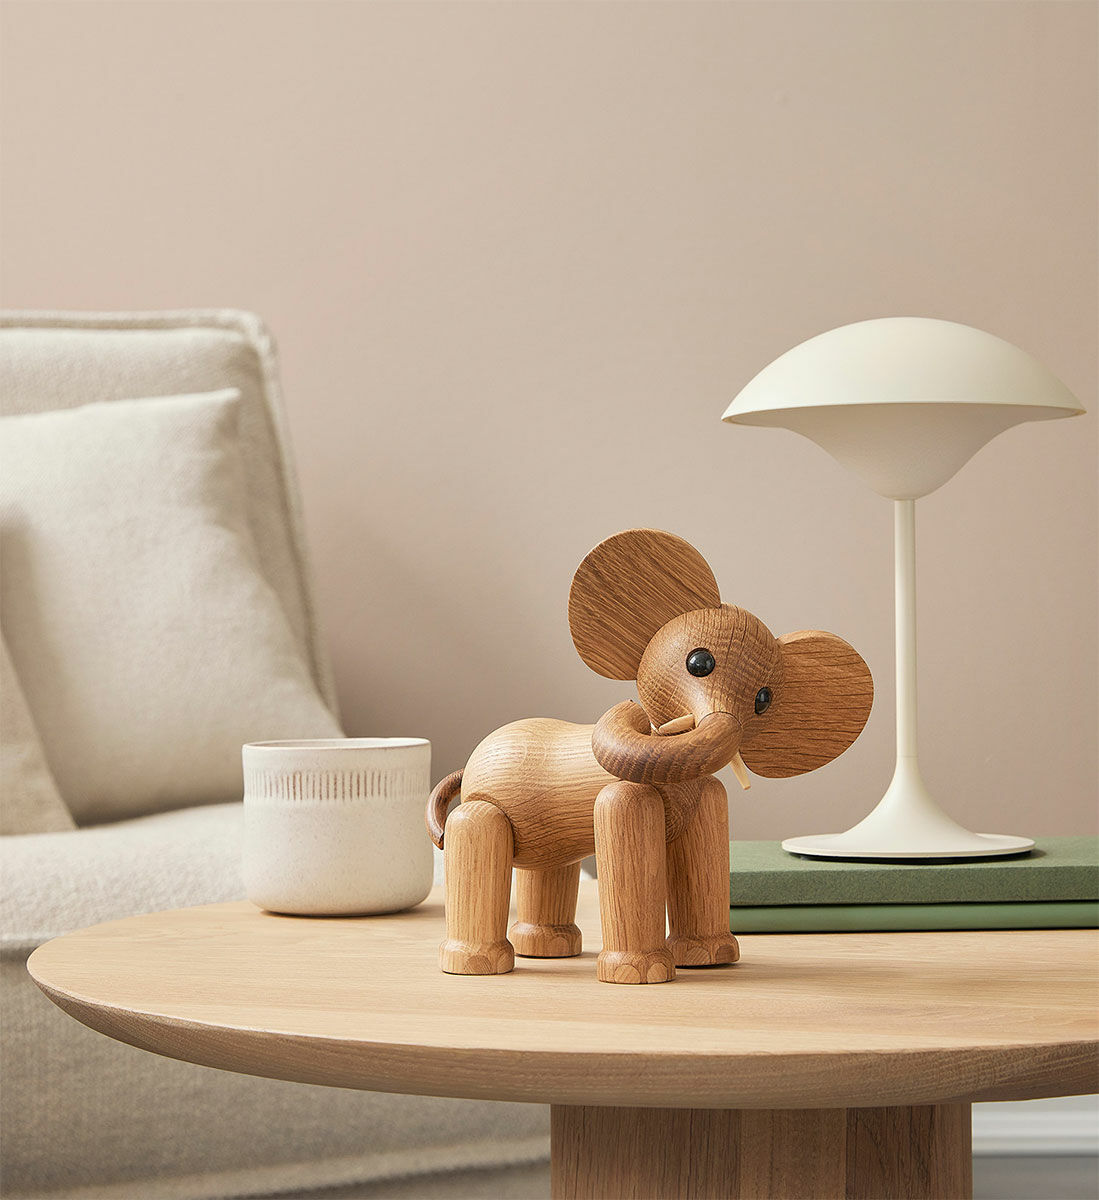 Træfigur "Elefanten Ollie" - Design Chresten Sommer von Spring Copenhagen